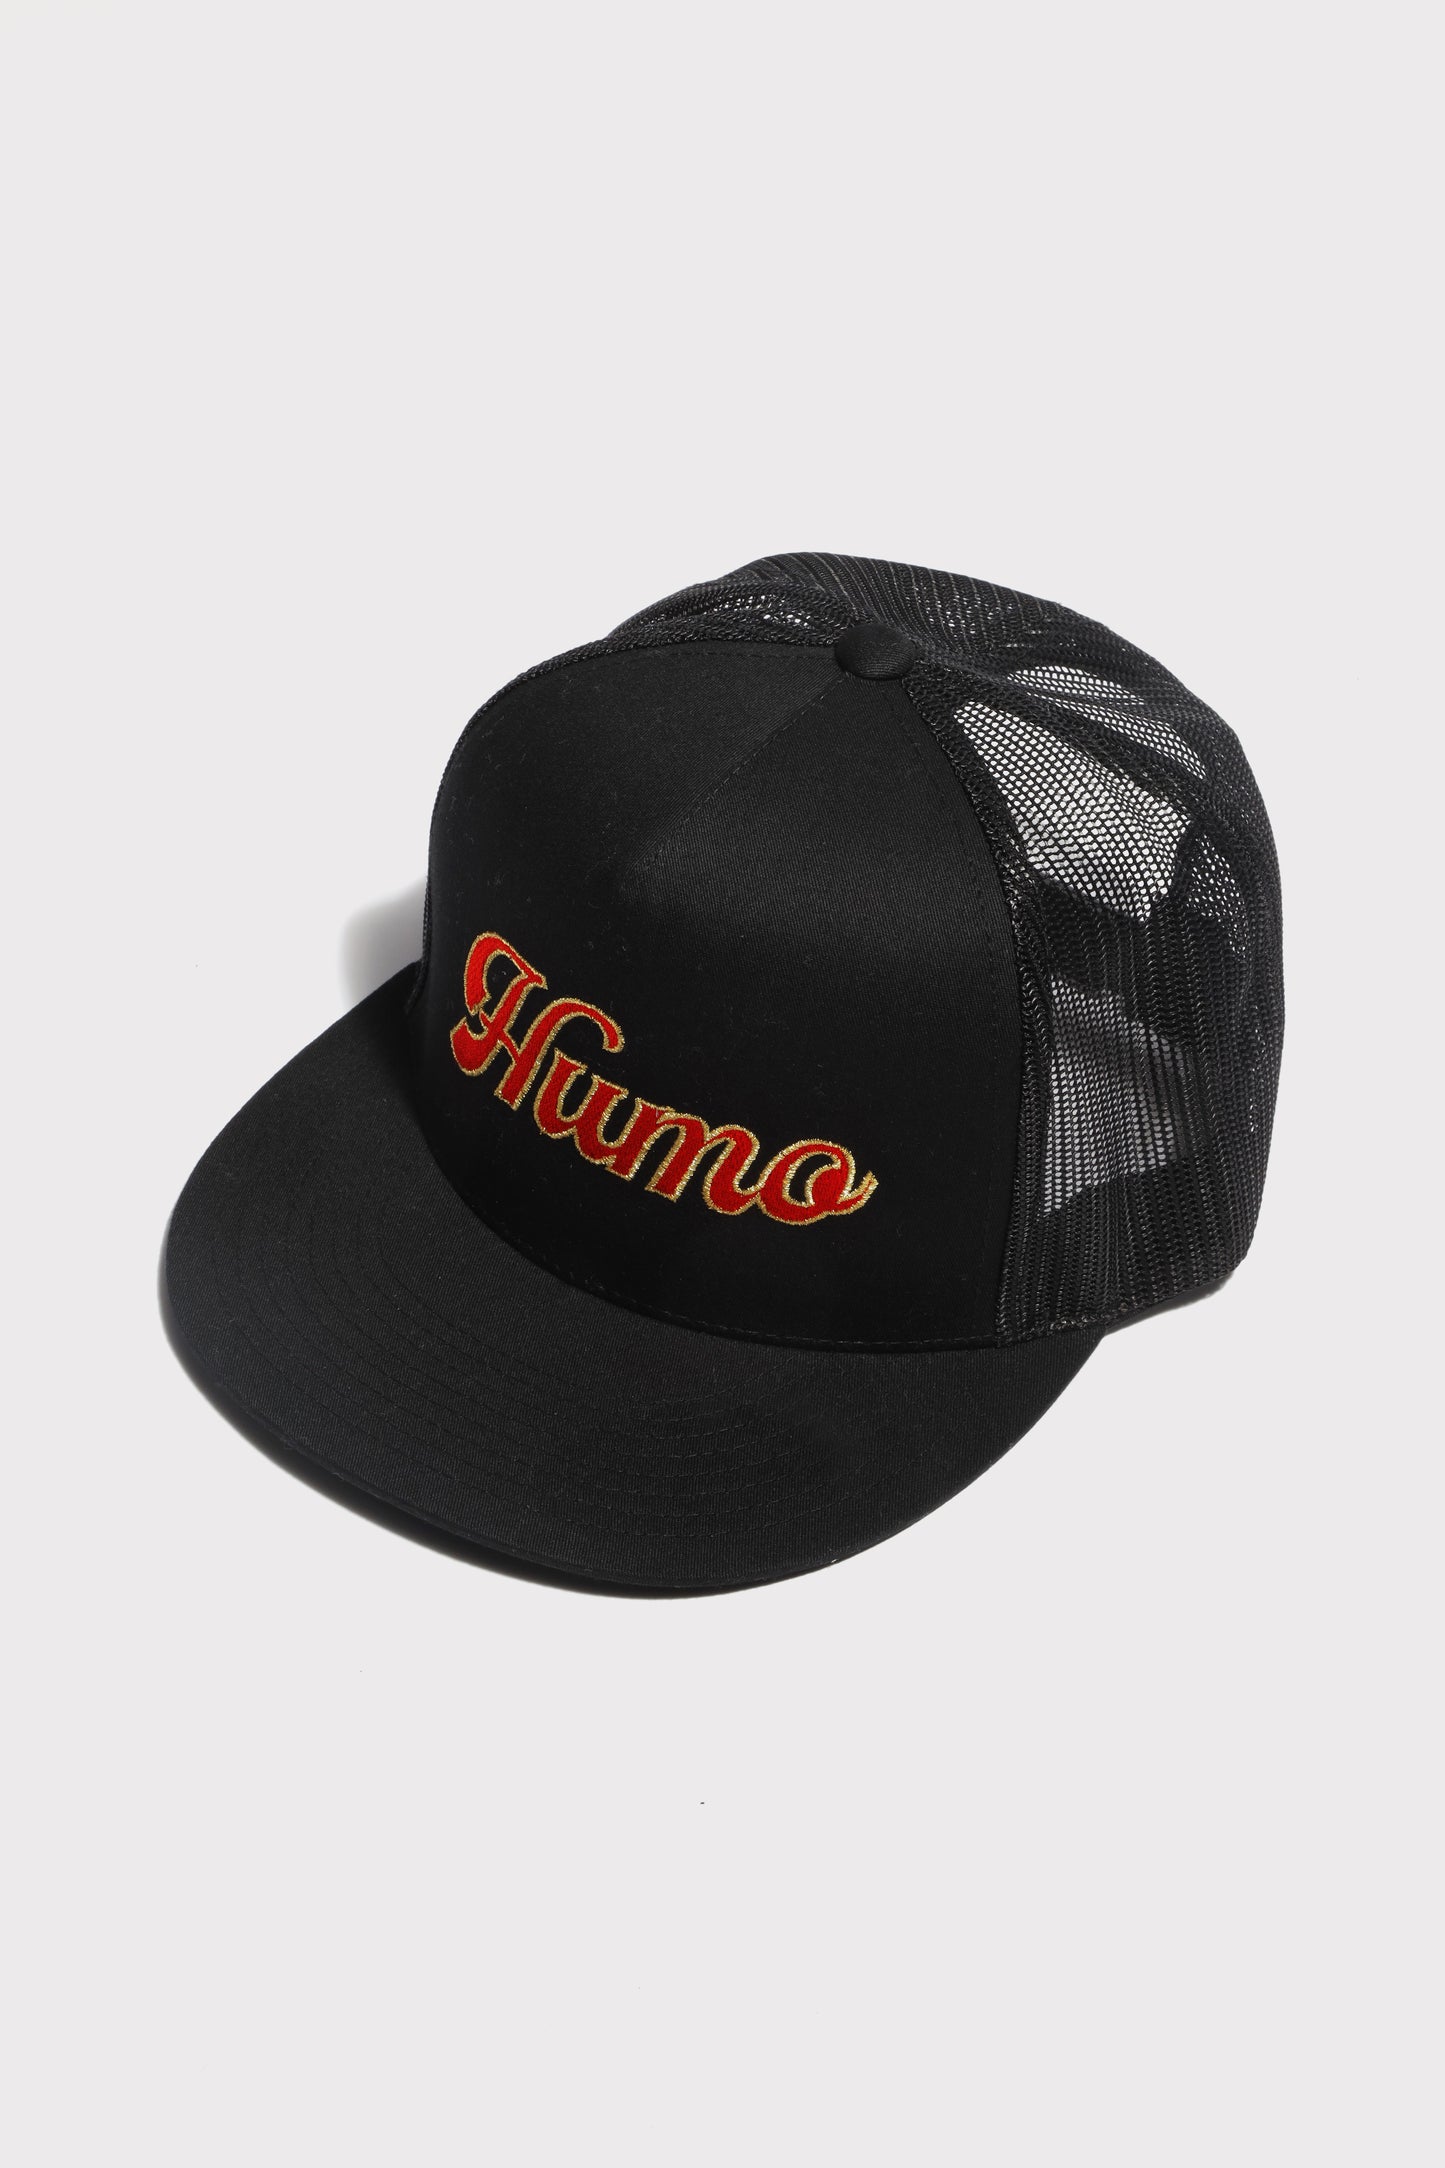 Trucker "Humo" Hat (Black)